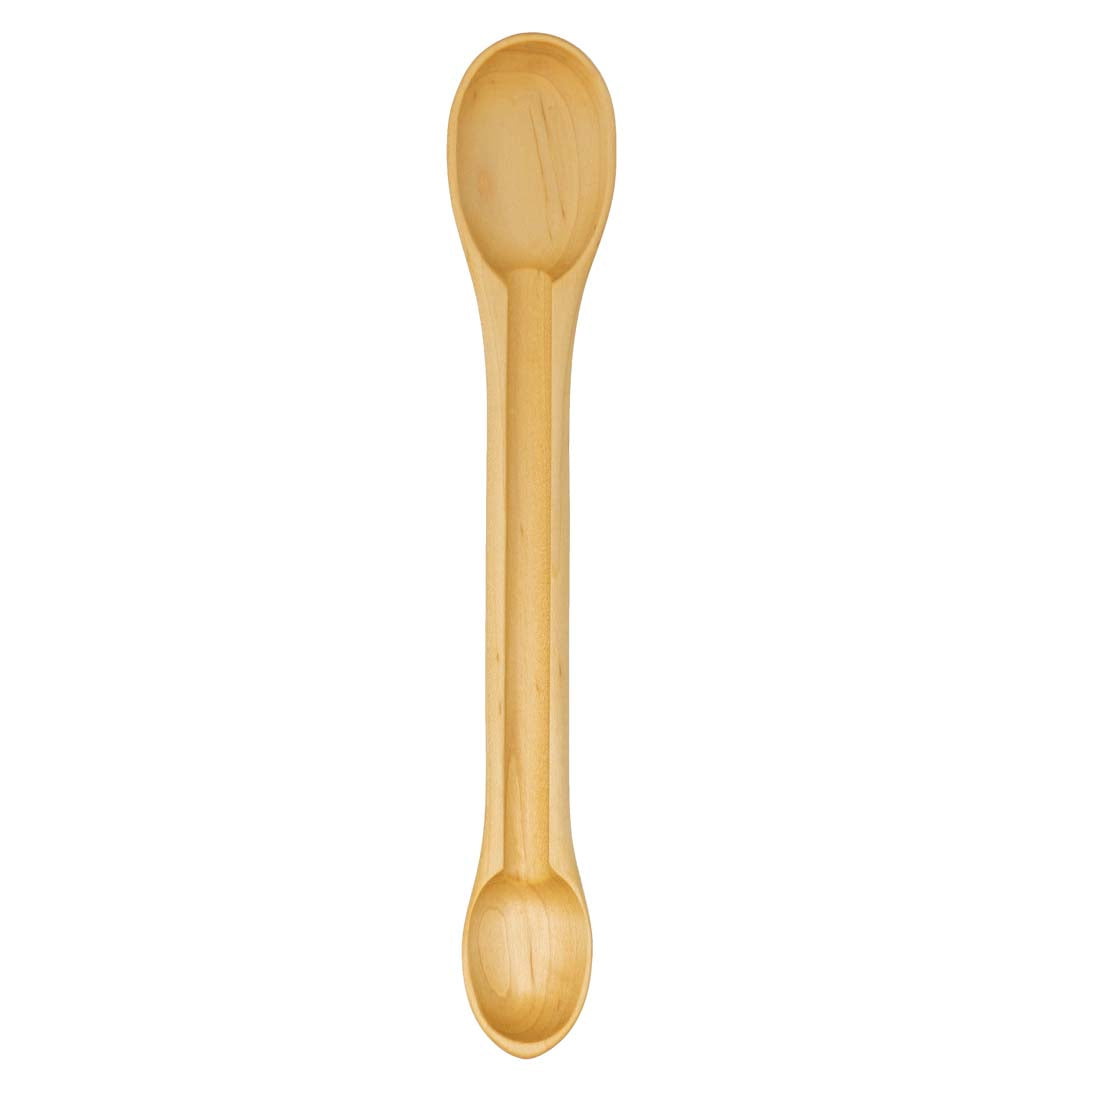 Maple Tasting Spoon